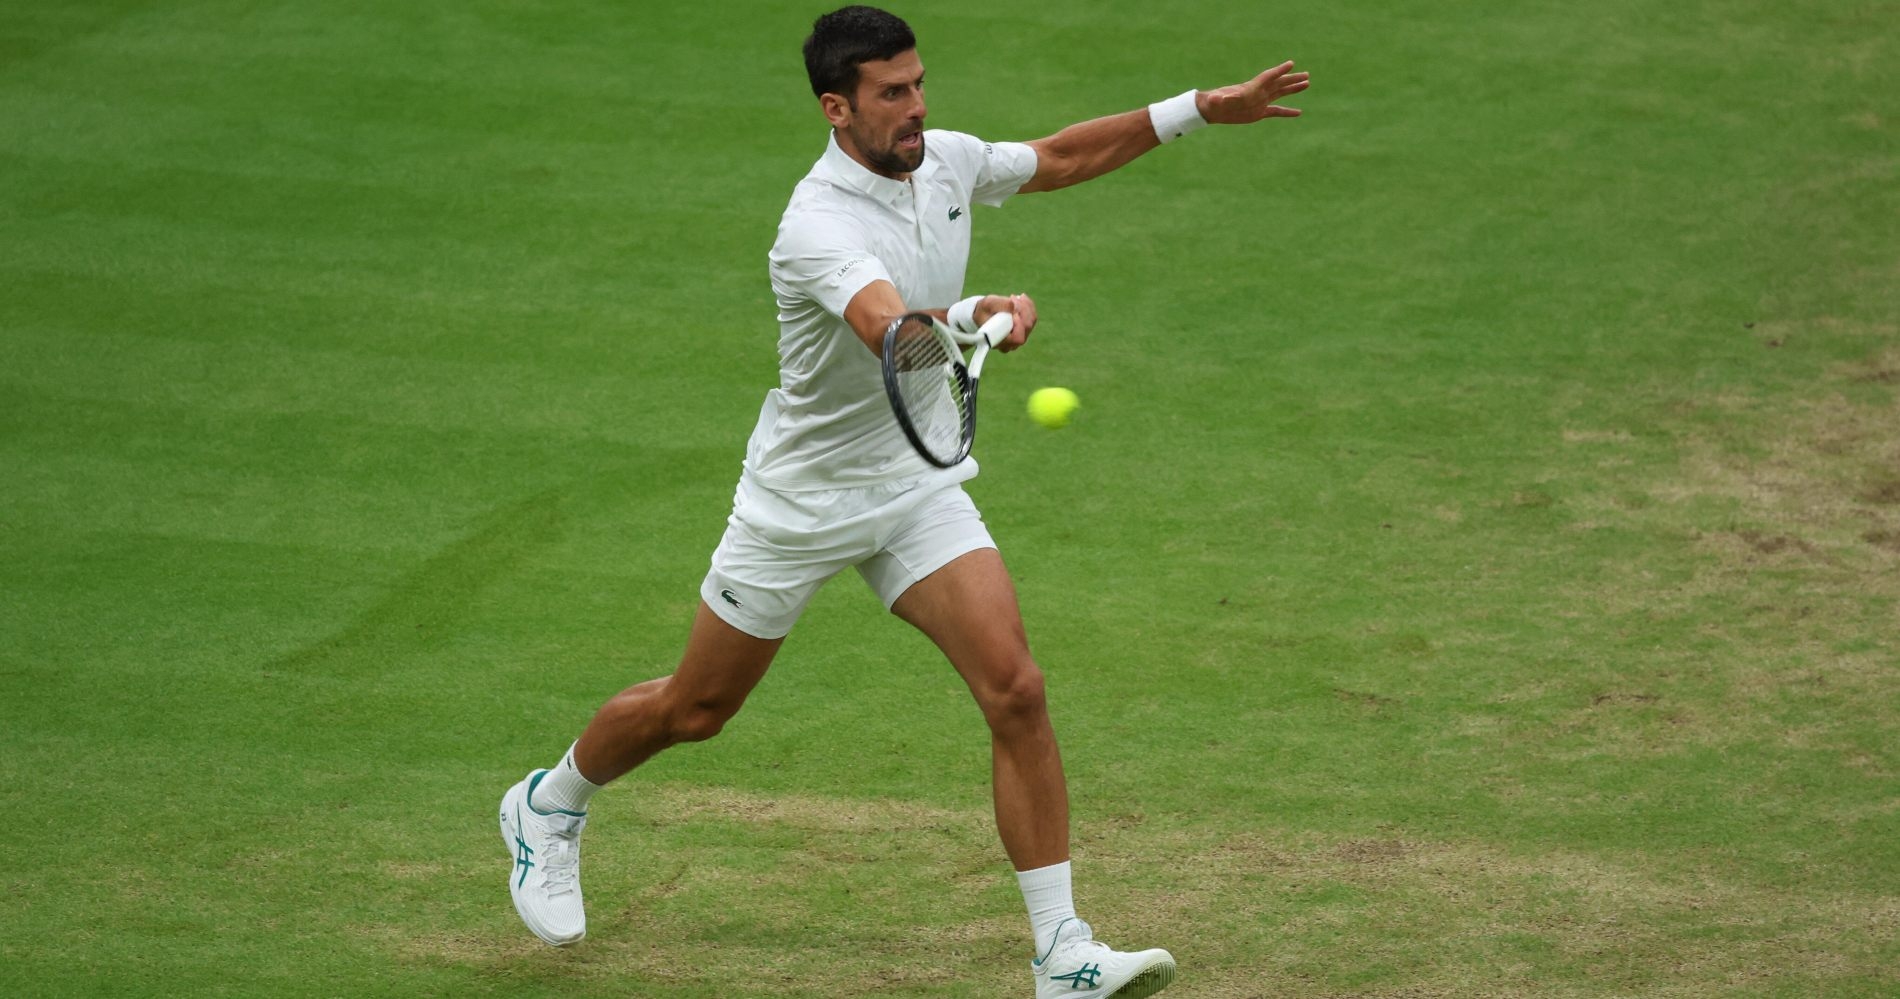 Tennis, ATP – Wimbledon 2023: Djokovic defeats Sinner - Tennis Majors